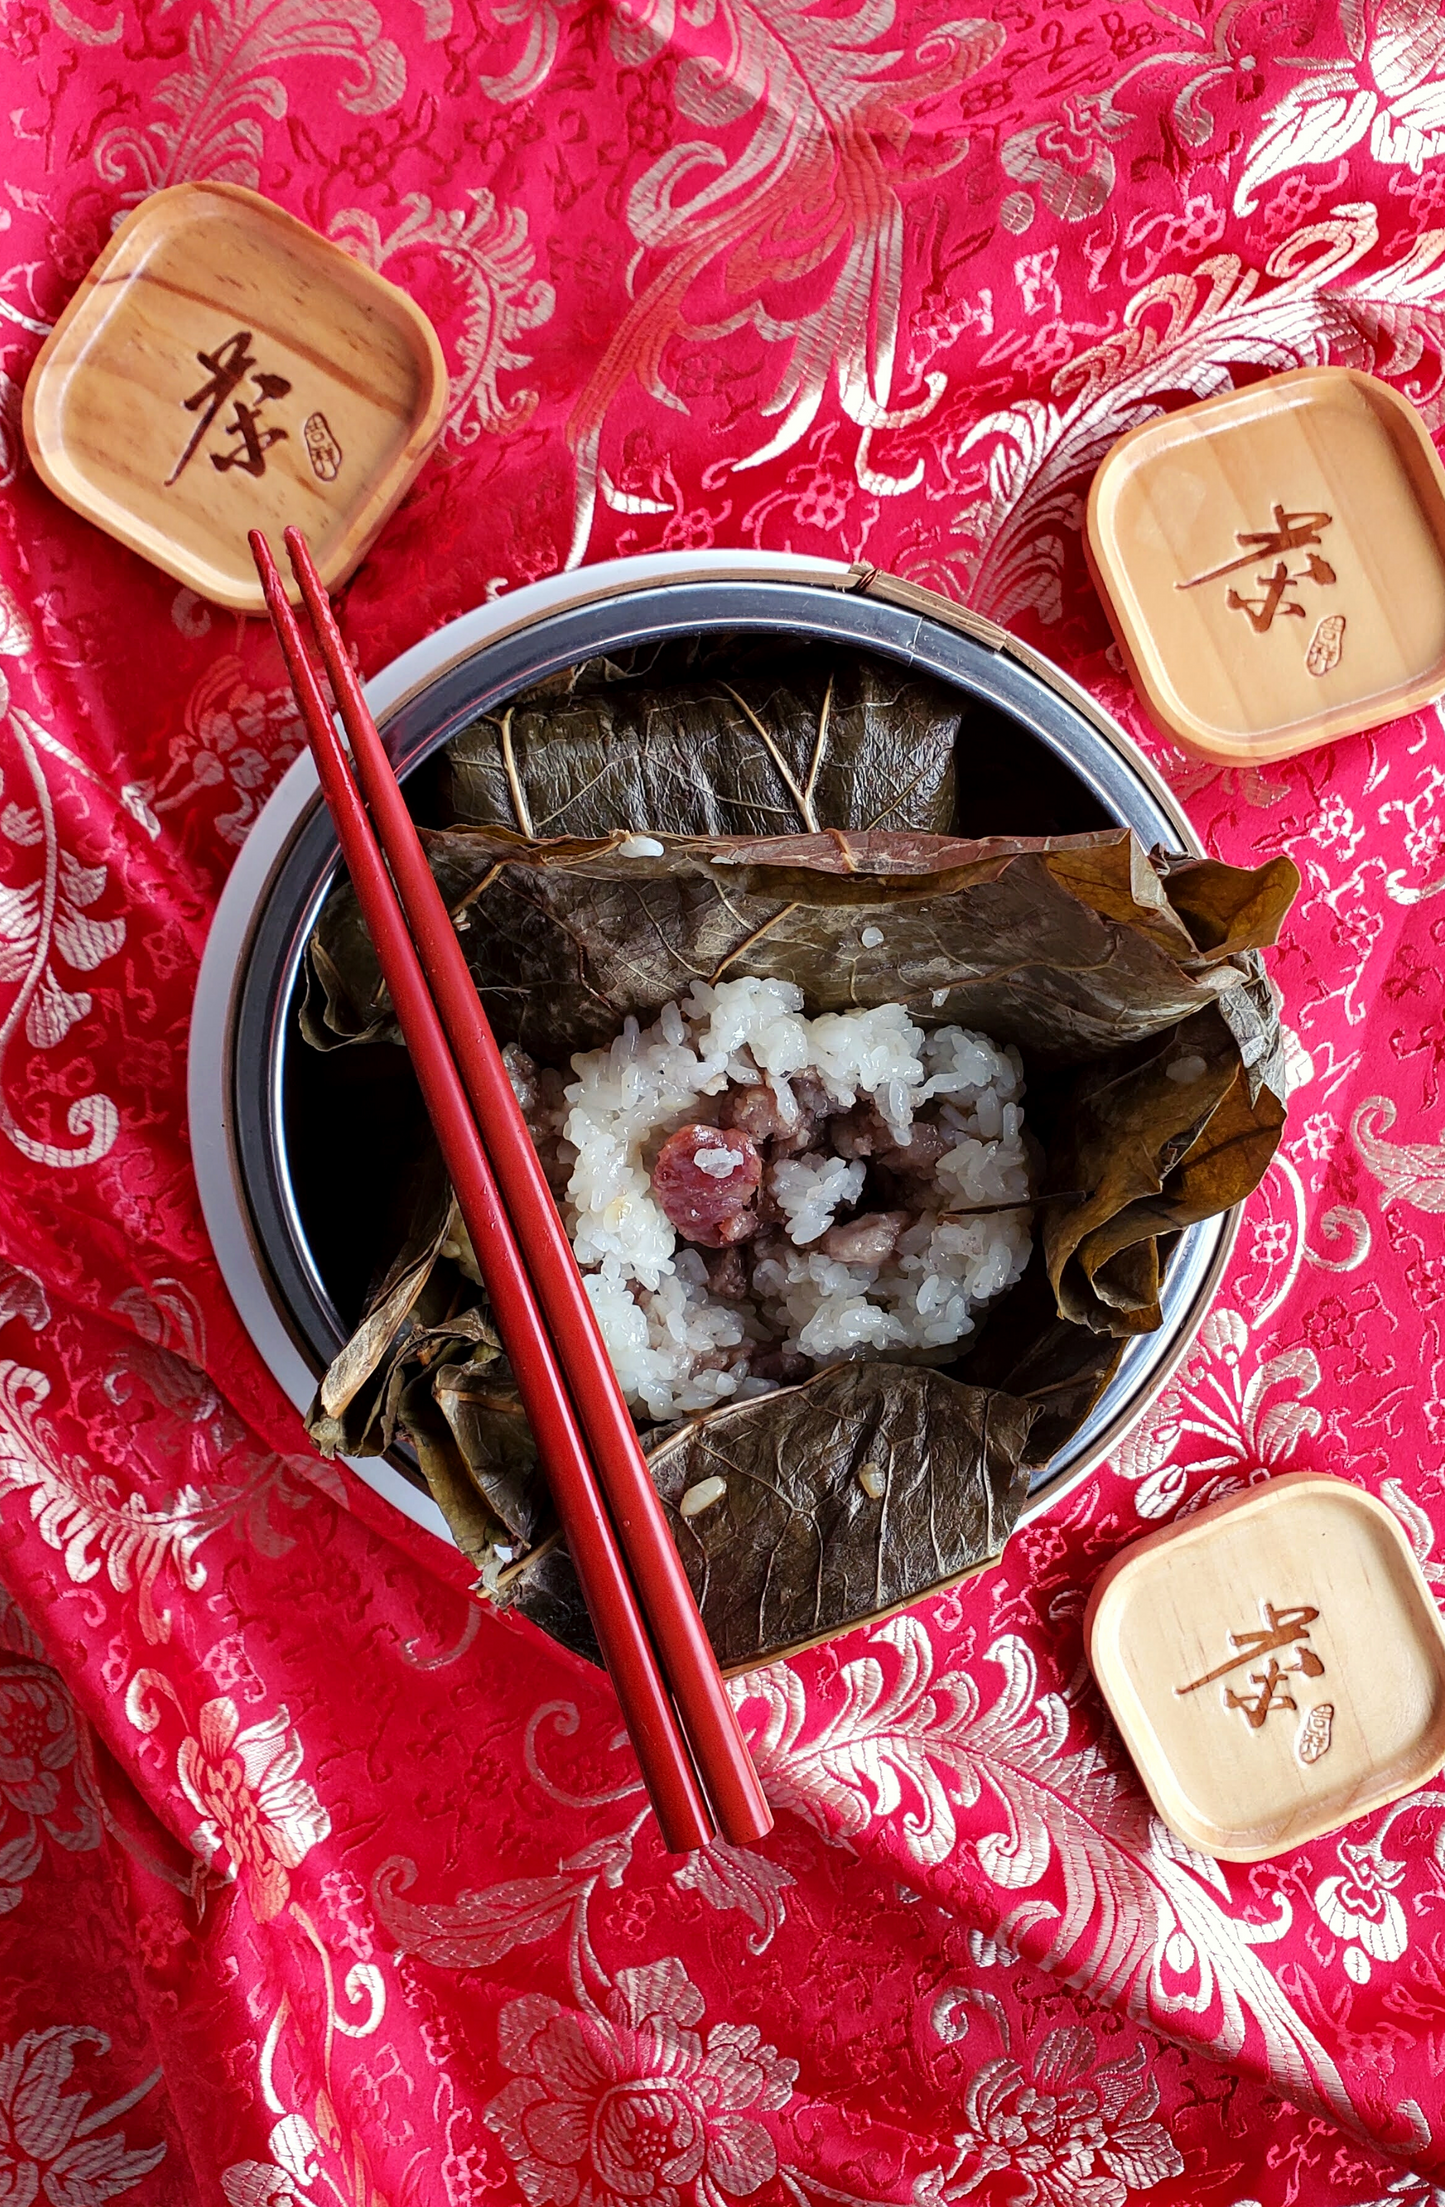 Lotus Wrapped Pork Sticky Rice - 珍珠雞 (zan1 zyu1 gai1) - FROZEN